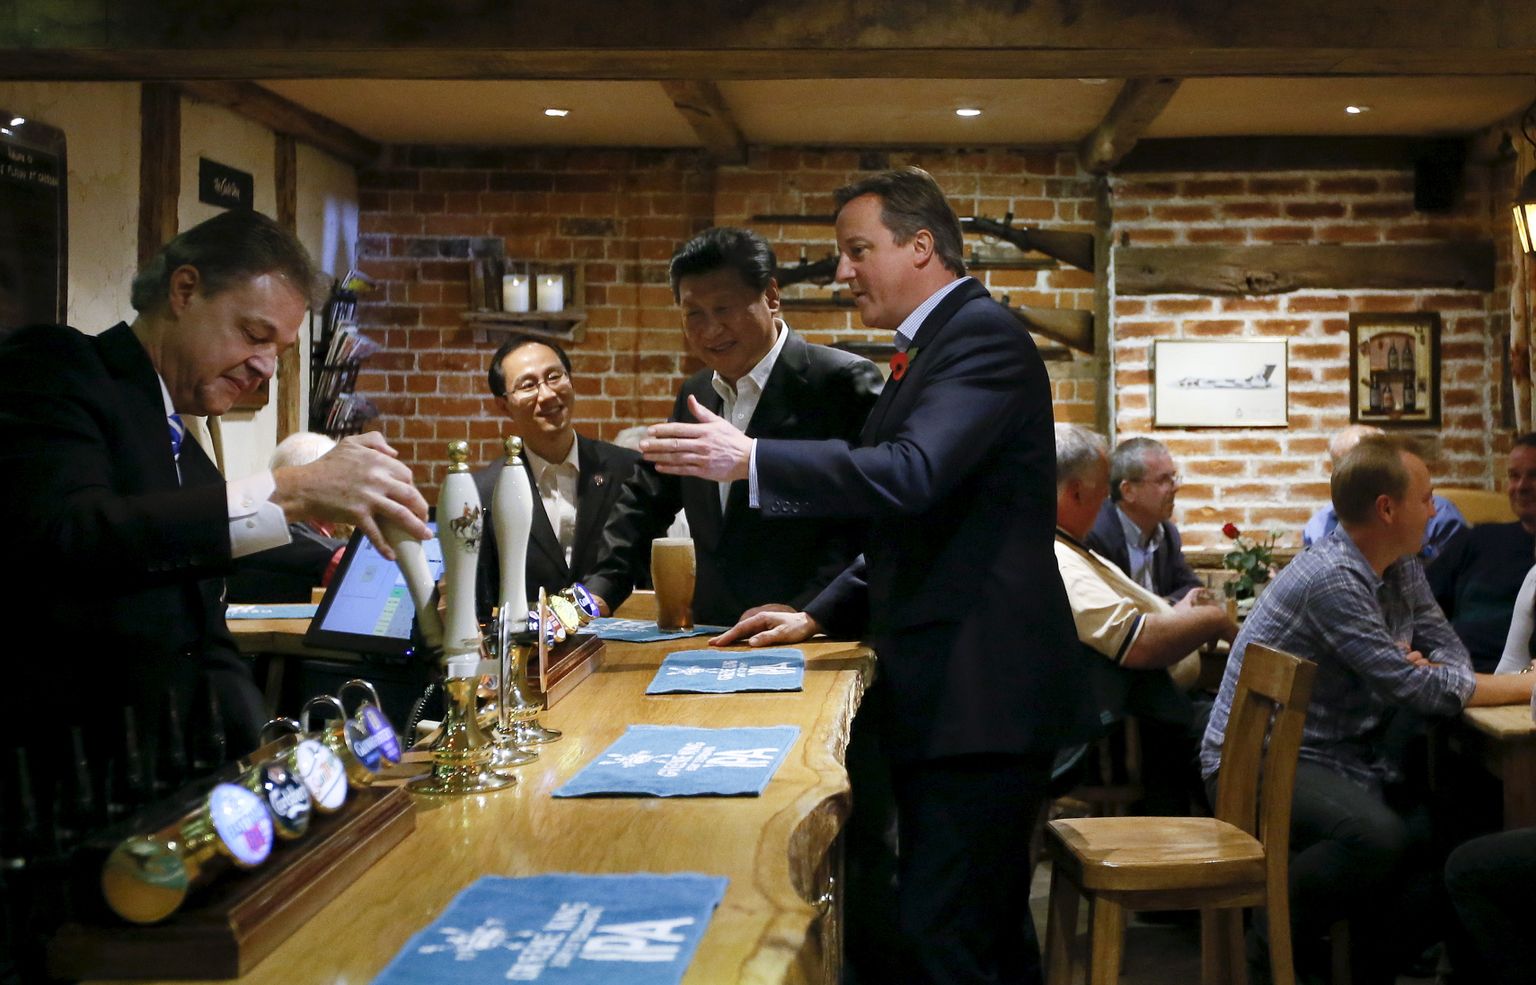 Hiina president Xi Jinping (keskel) 22. oktoobril 2015 koos toonase Briti peaministri David Cameroniga Chequersi lähistel Princes Risborough' pubis õlu pruukimas ja Peking-Londoni suhete kuldajastut välja kuulutamas.